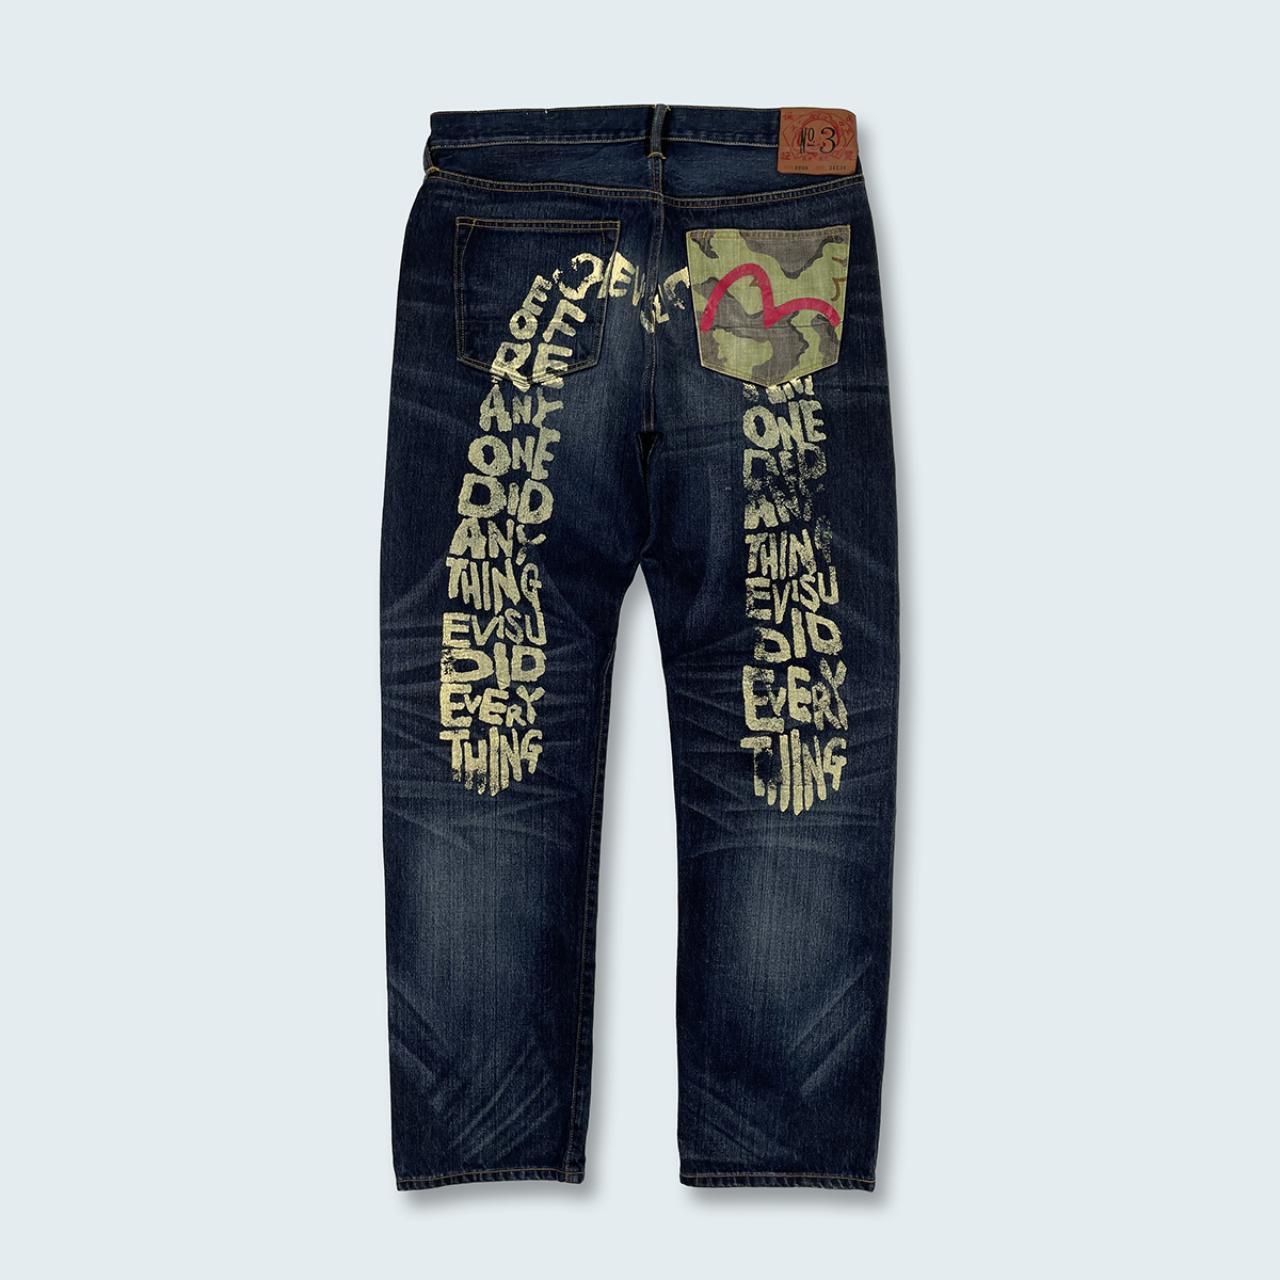 Authentic Vintage Evisu Diacock Jeans  (34")